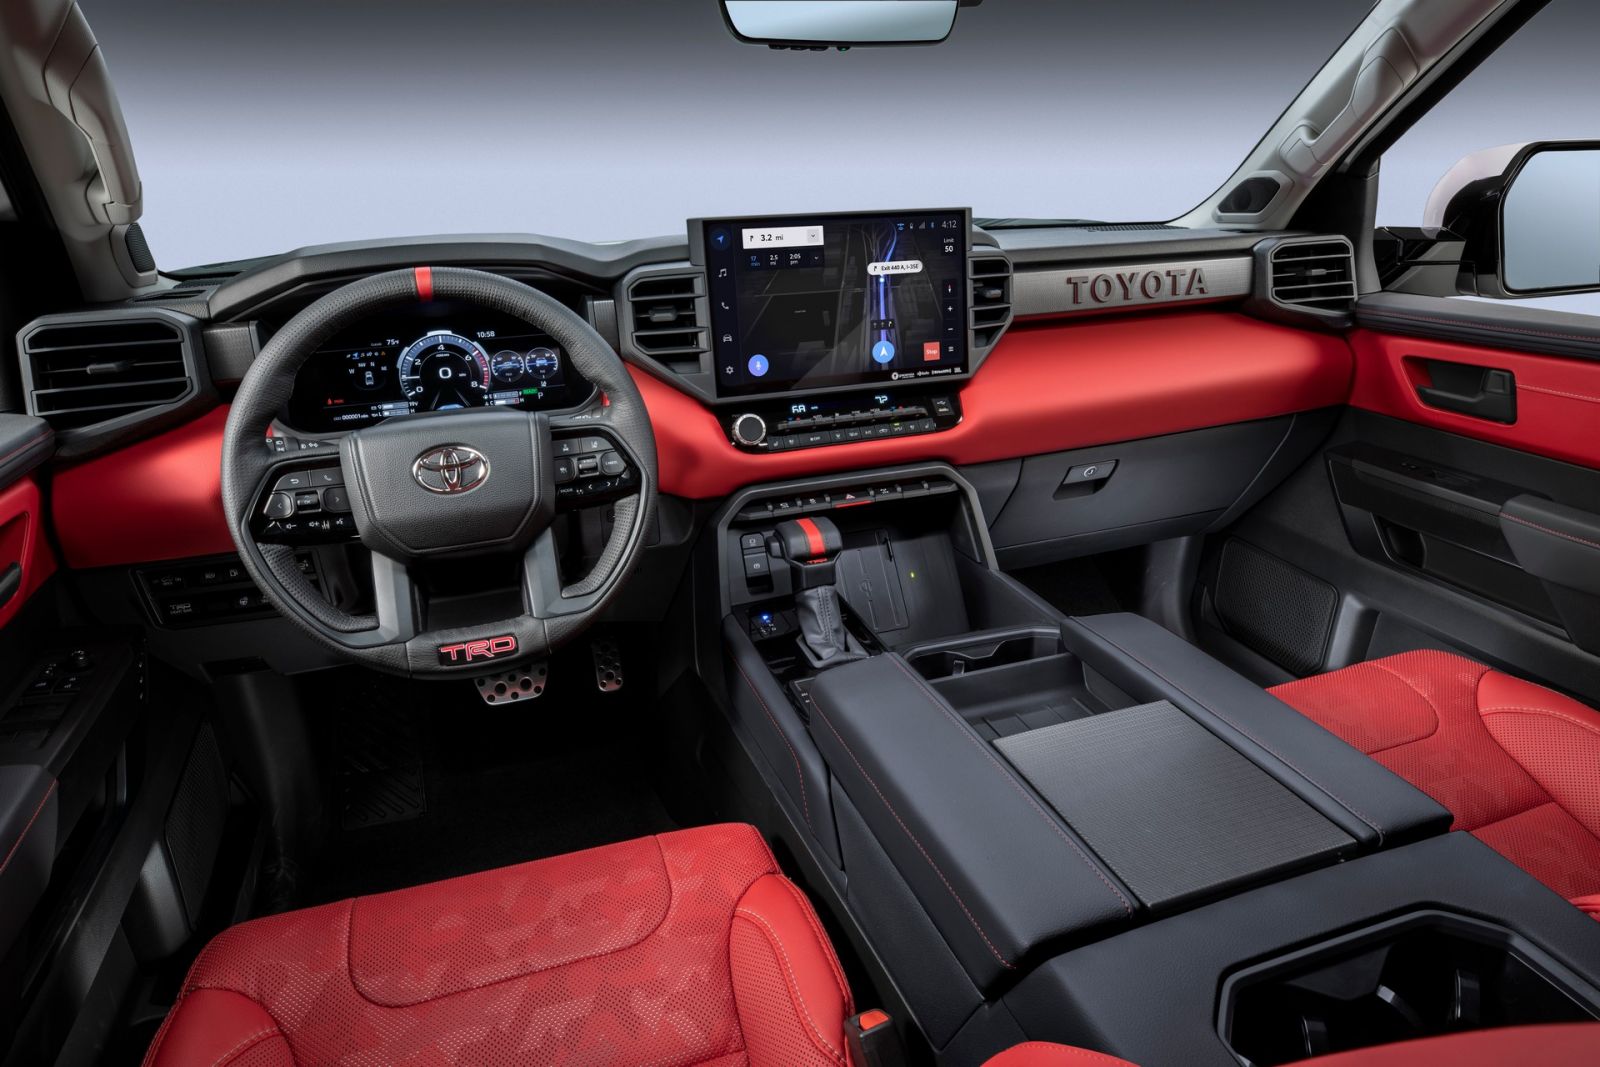 2022 Toyota Tundra กระบะไซสยักษ์รุ่นใหม่หมด โดนใจคนแกร่ง เท่ทุกมุมมอง AUTODEFT ข่าวรถยนต์